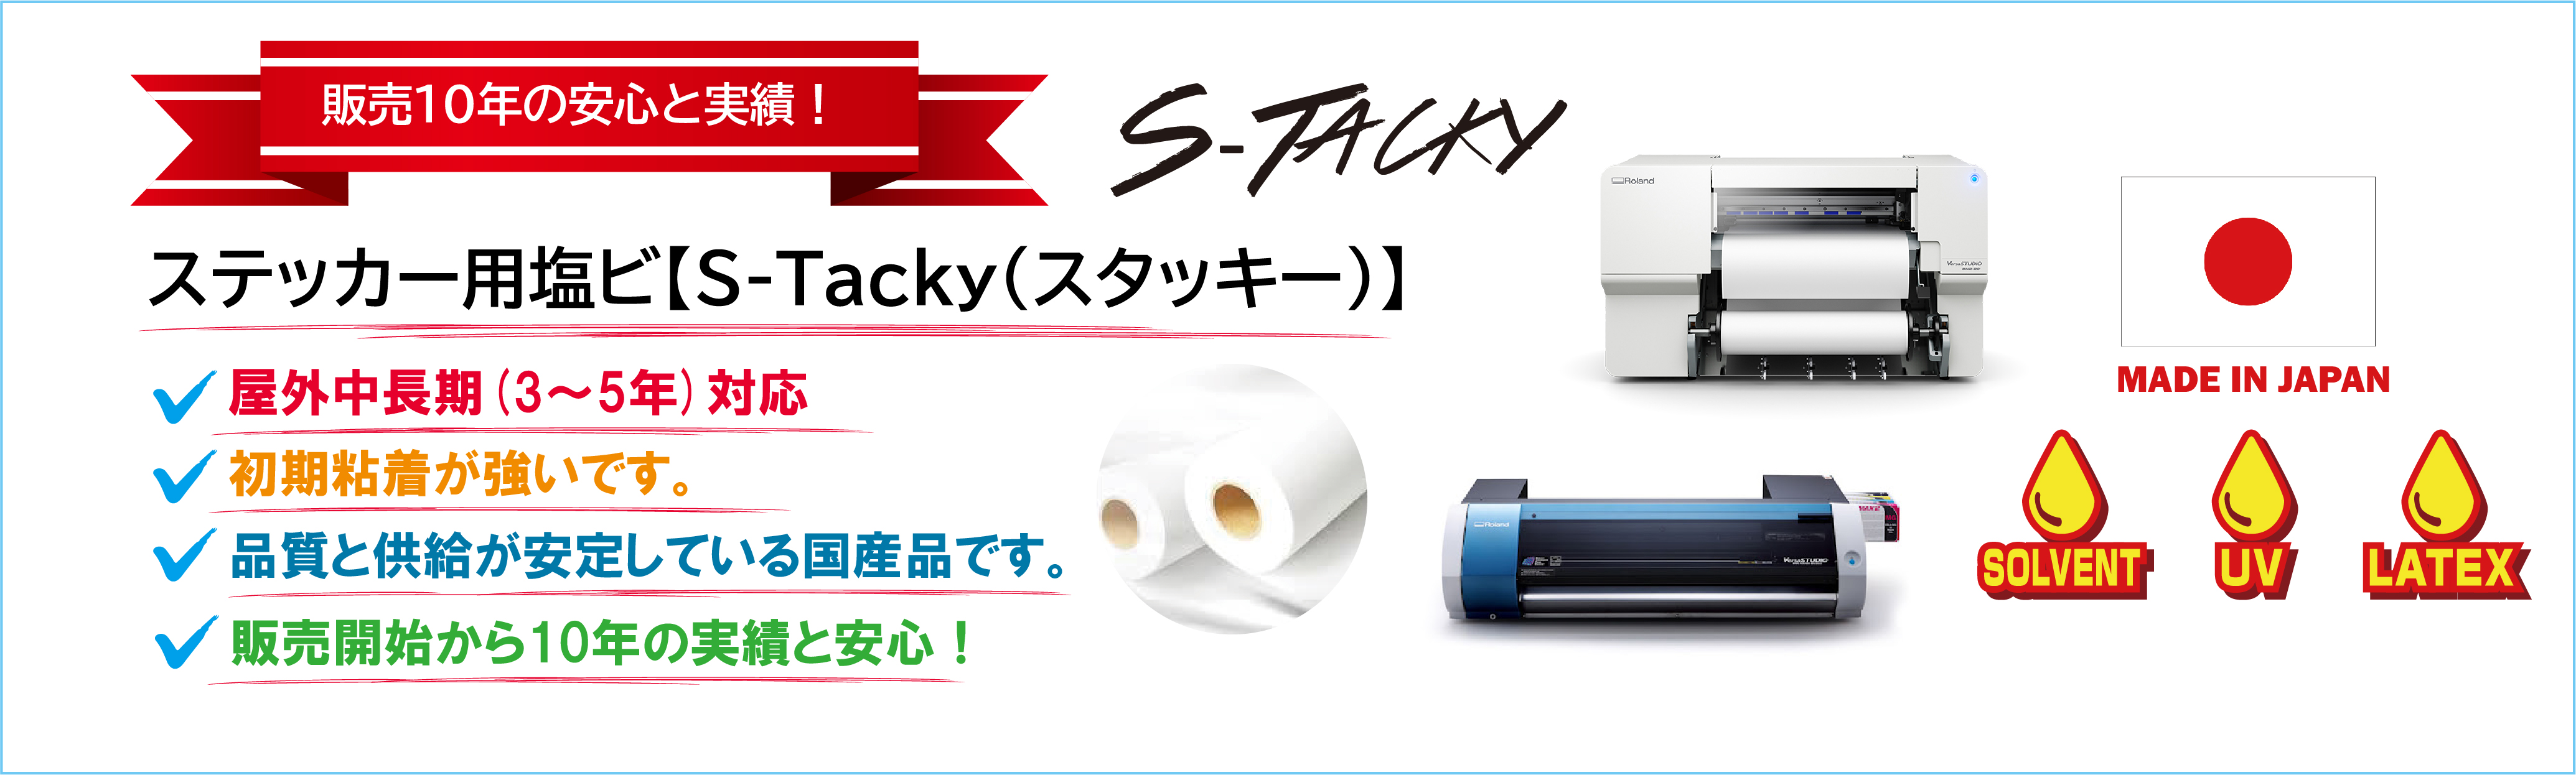 ステッカー用塩ビ【S-Tacky】